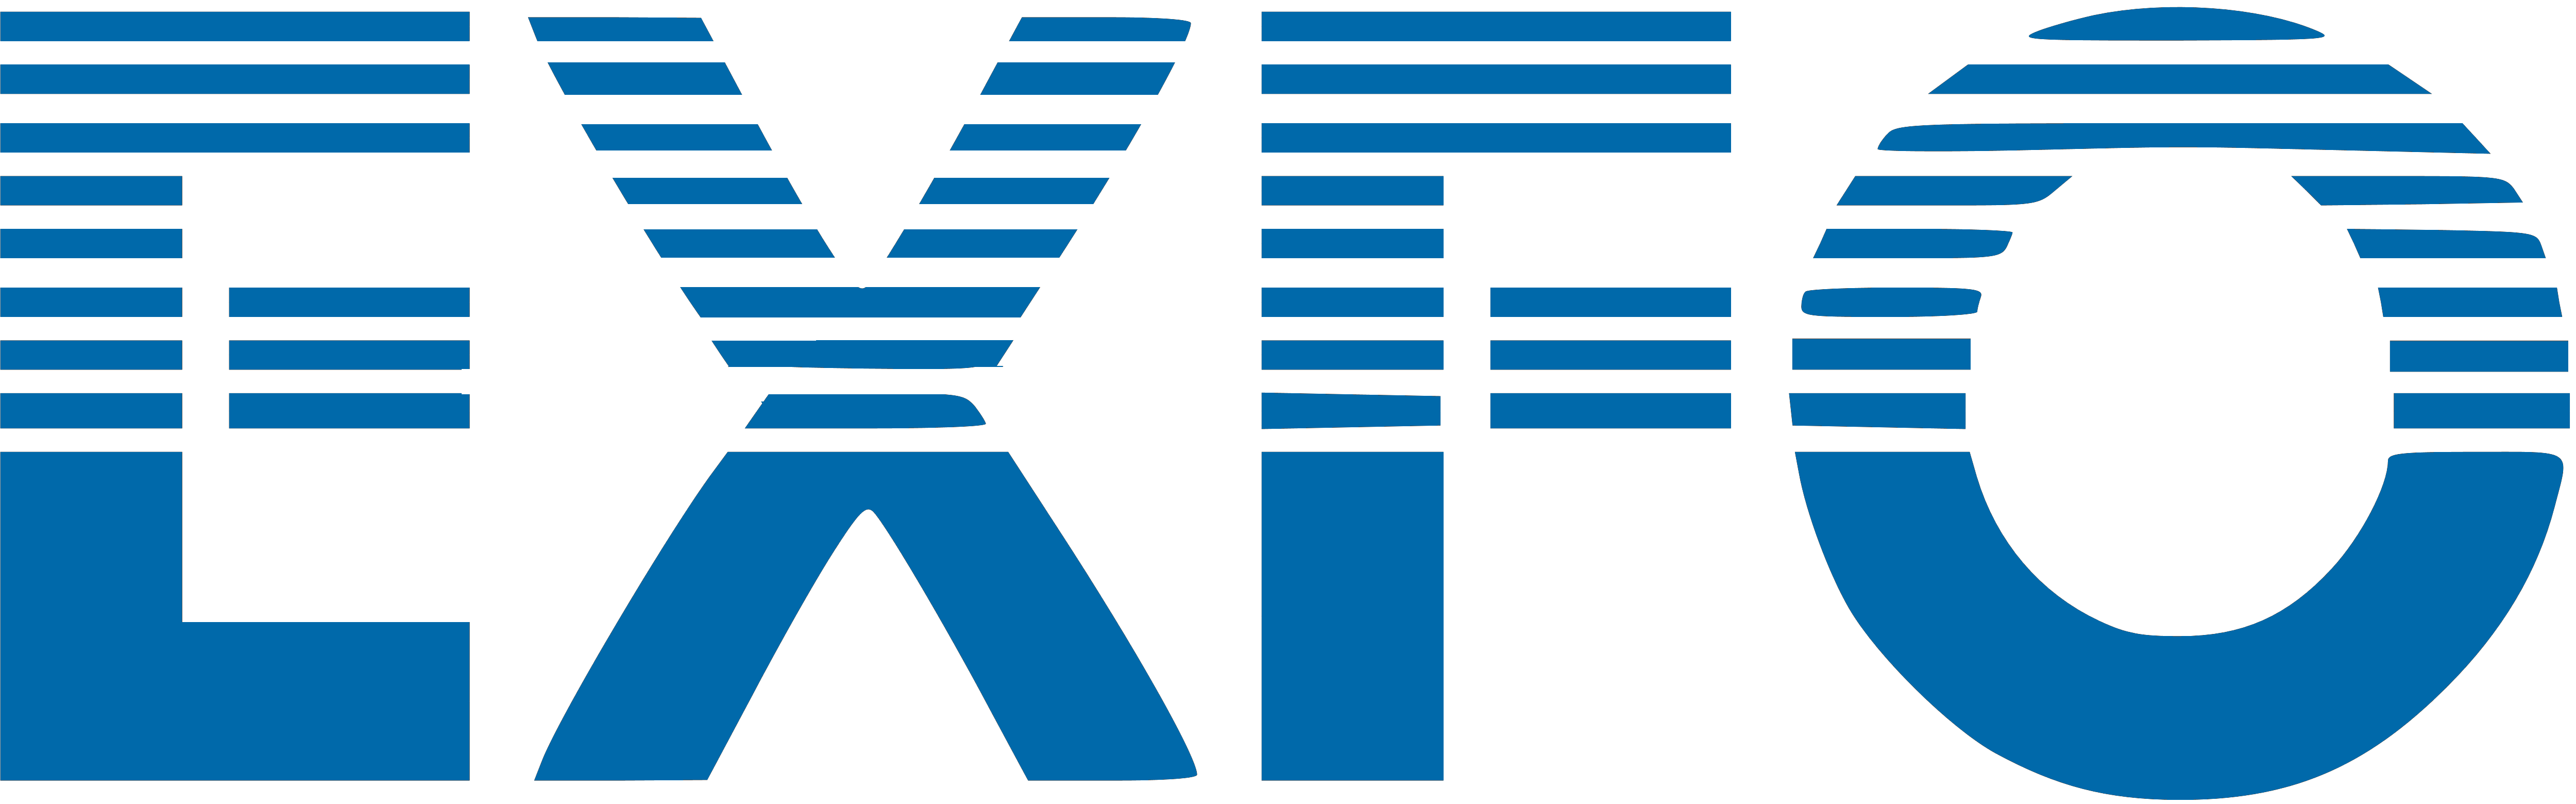 logo EXFO